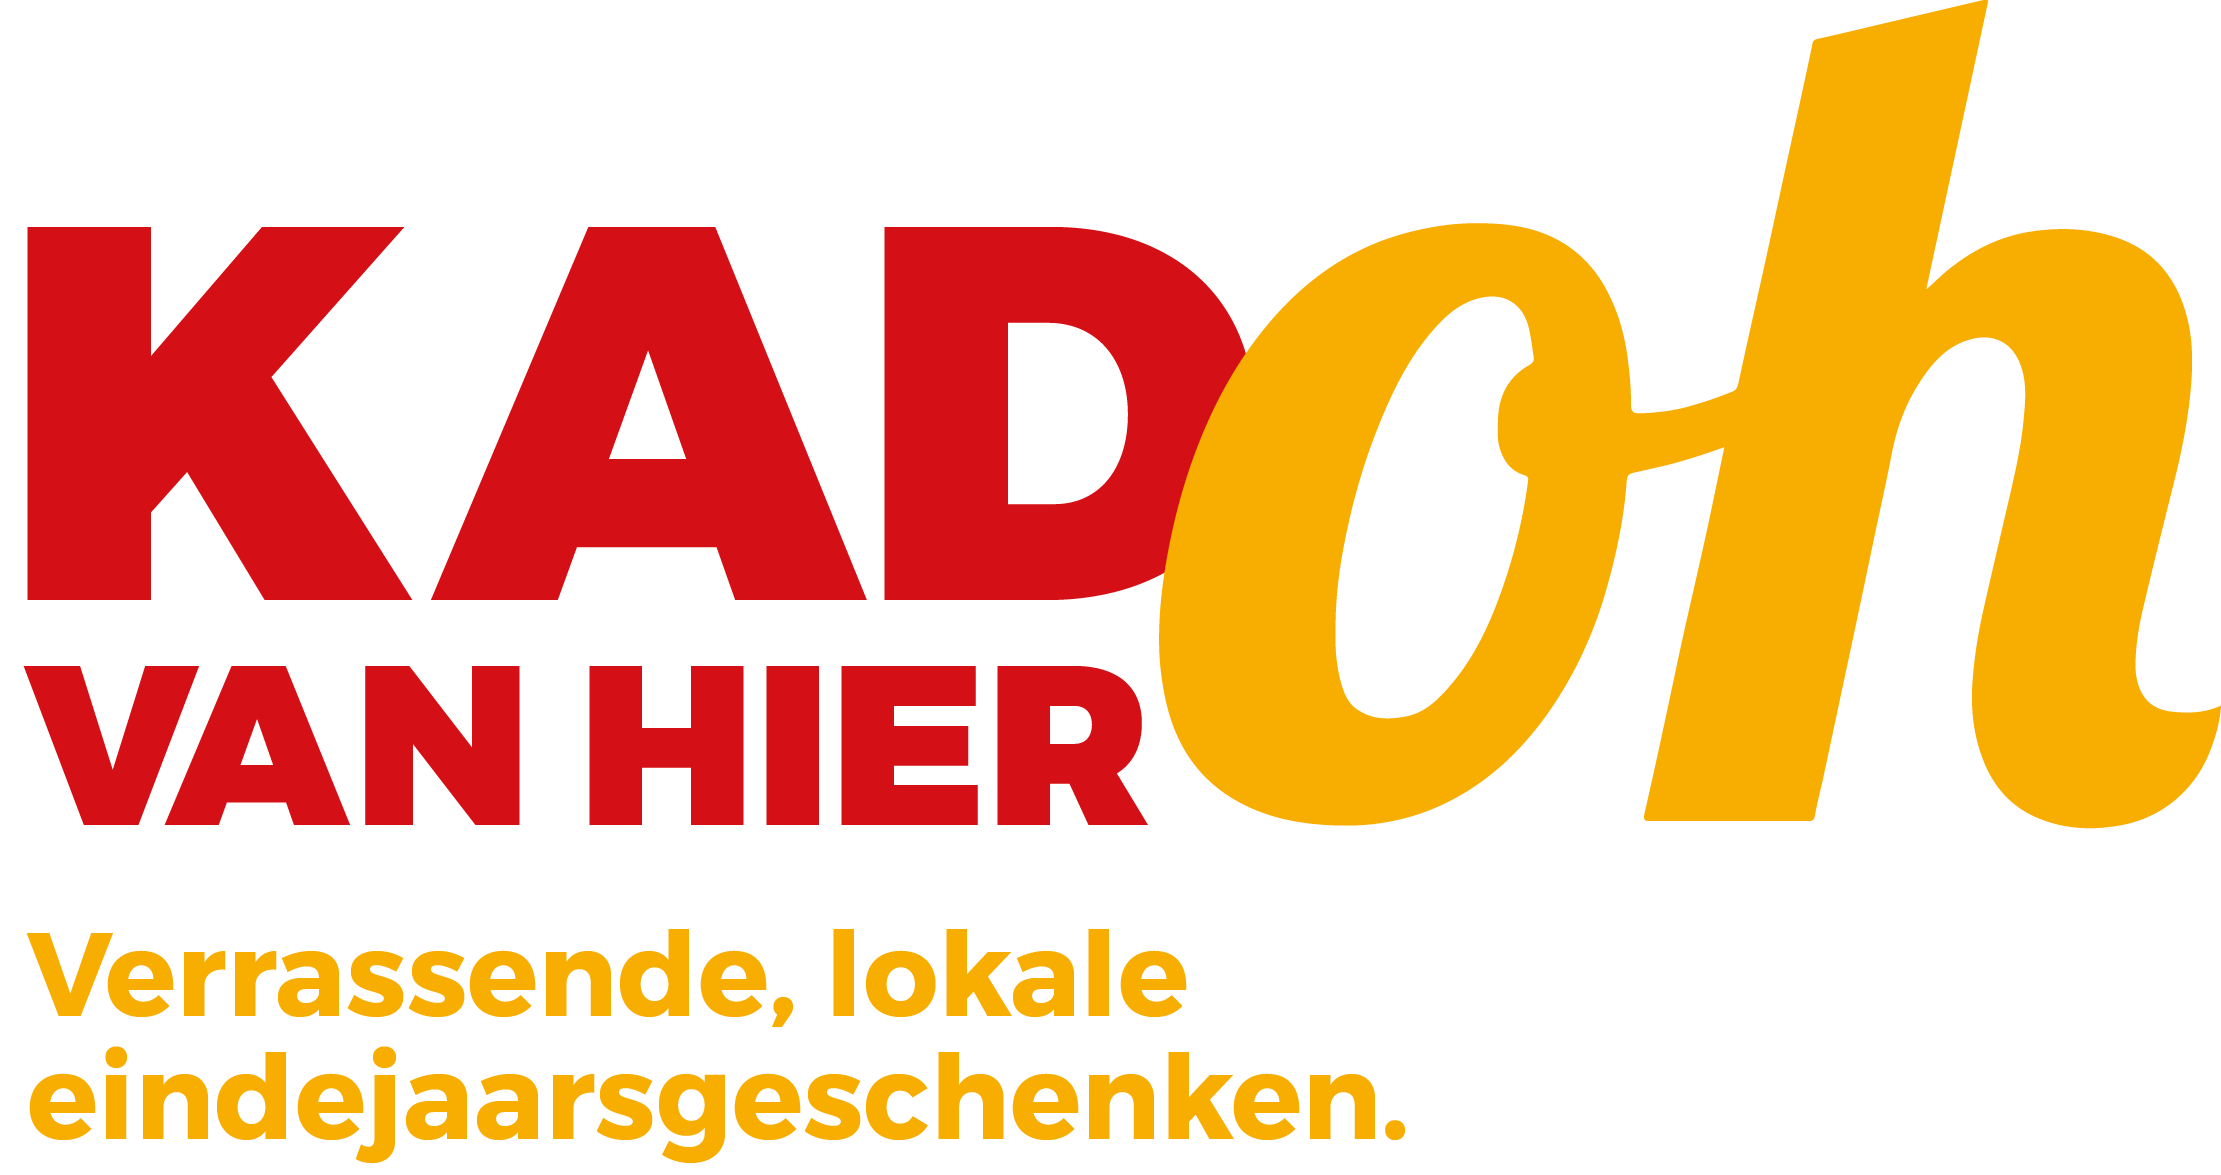 Persbericht: Stad Sint-Niklaas lanceert online platform ‘KadOh van hier’ ter ondersteuning van lokale handel